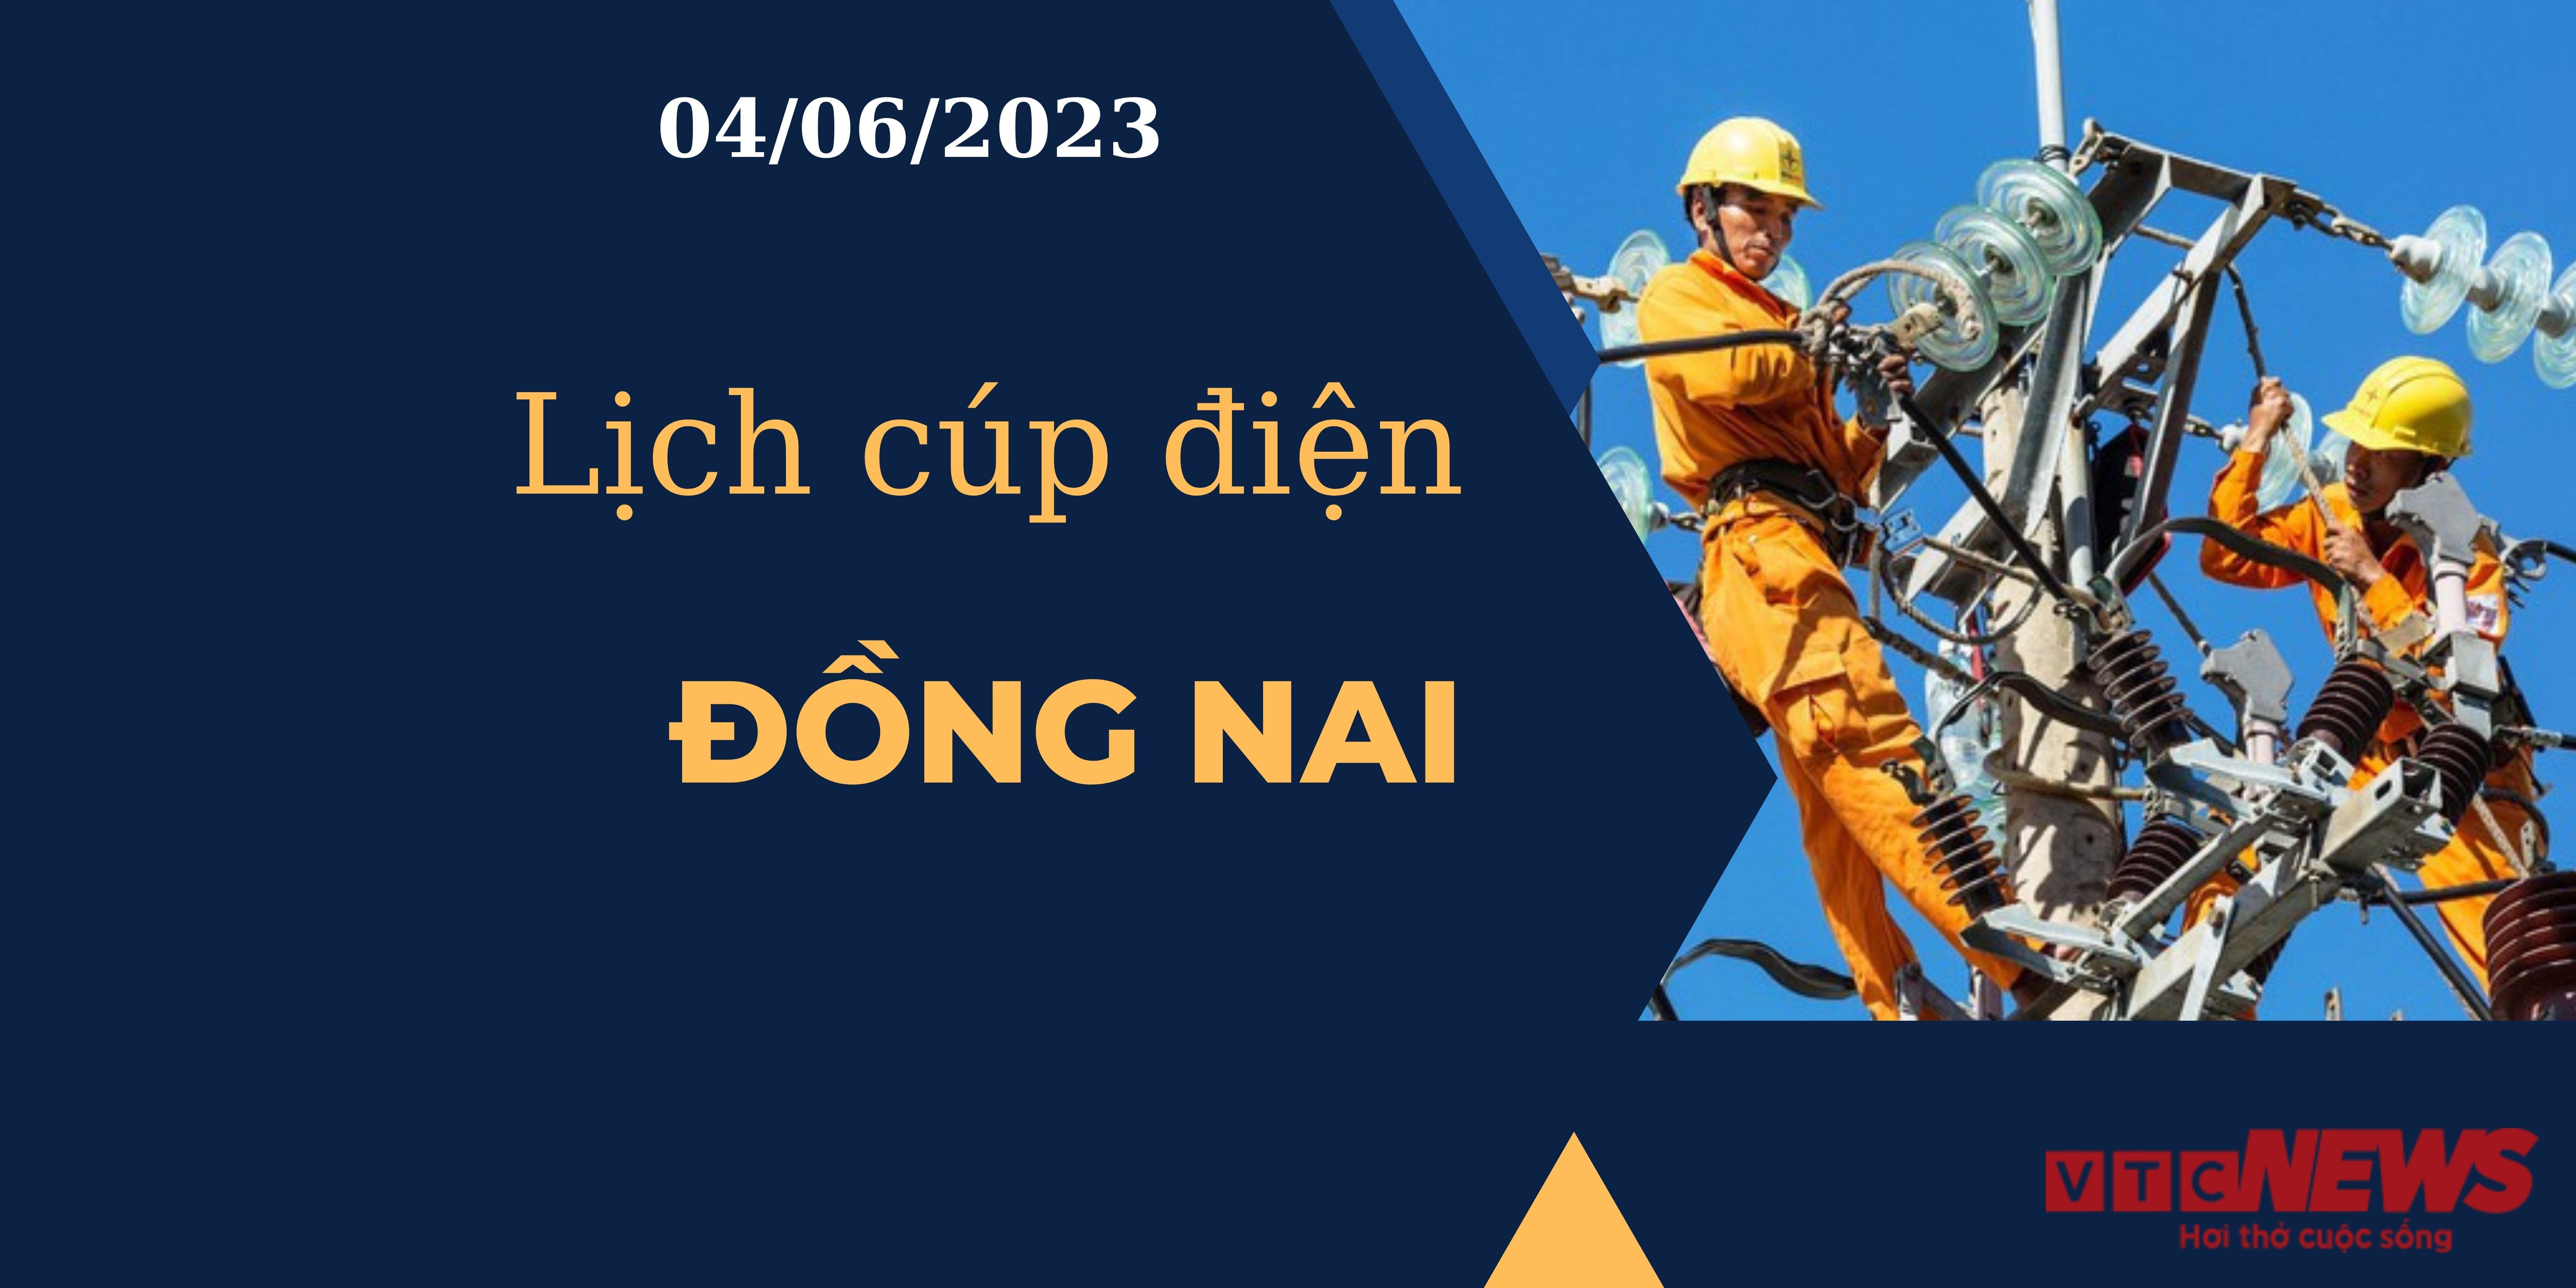 Lịch cúp điện hôm nay ngày 04/06/2023 tại Đồng Nai - 1